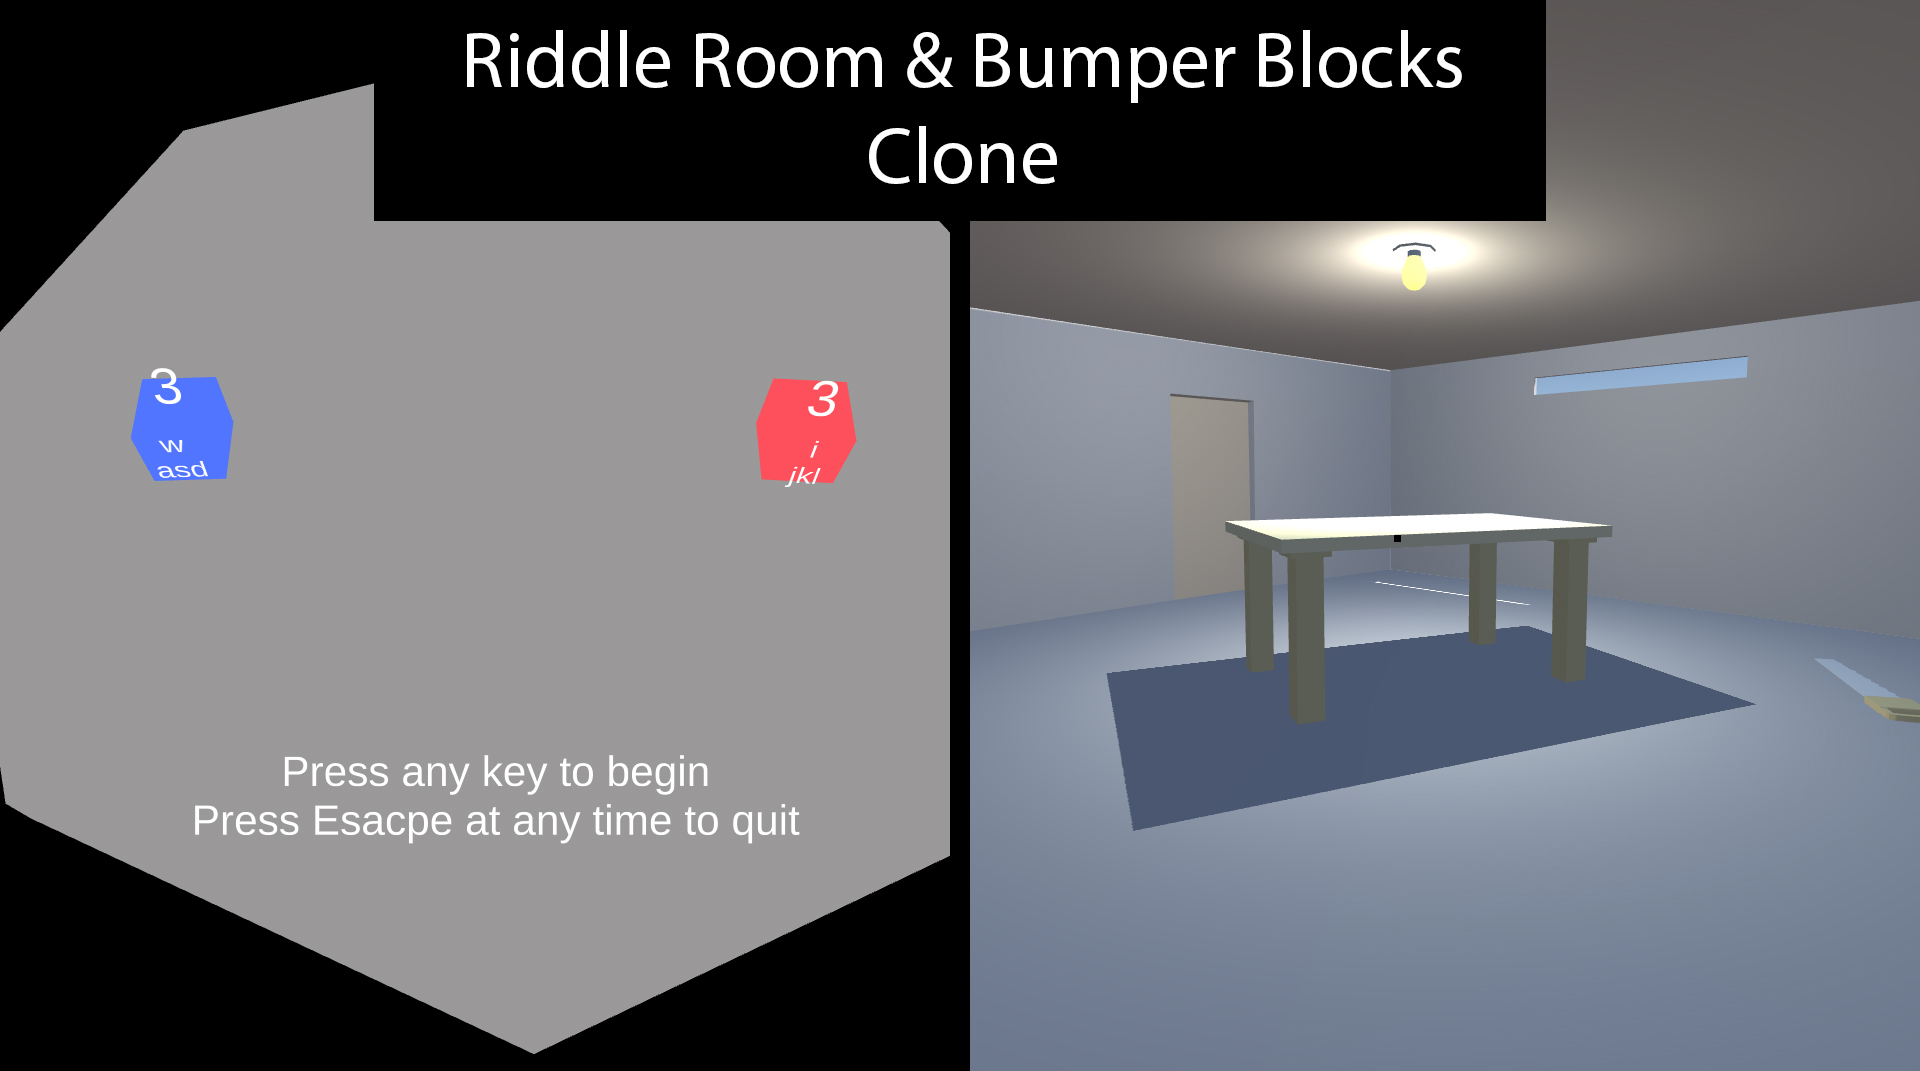 Riddle Room & Bumper Blocks Clone